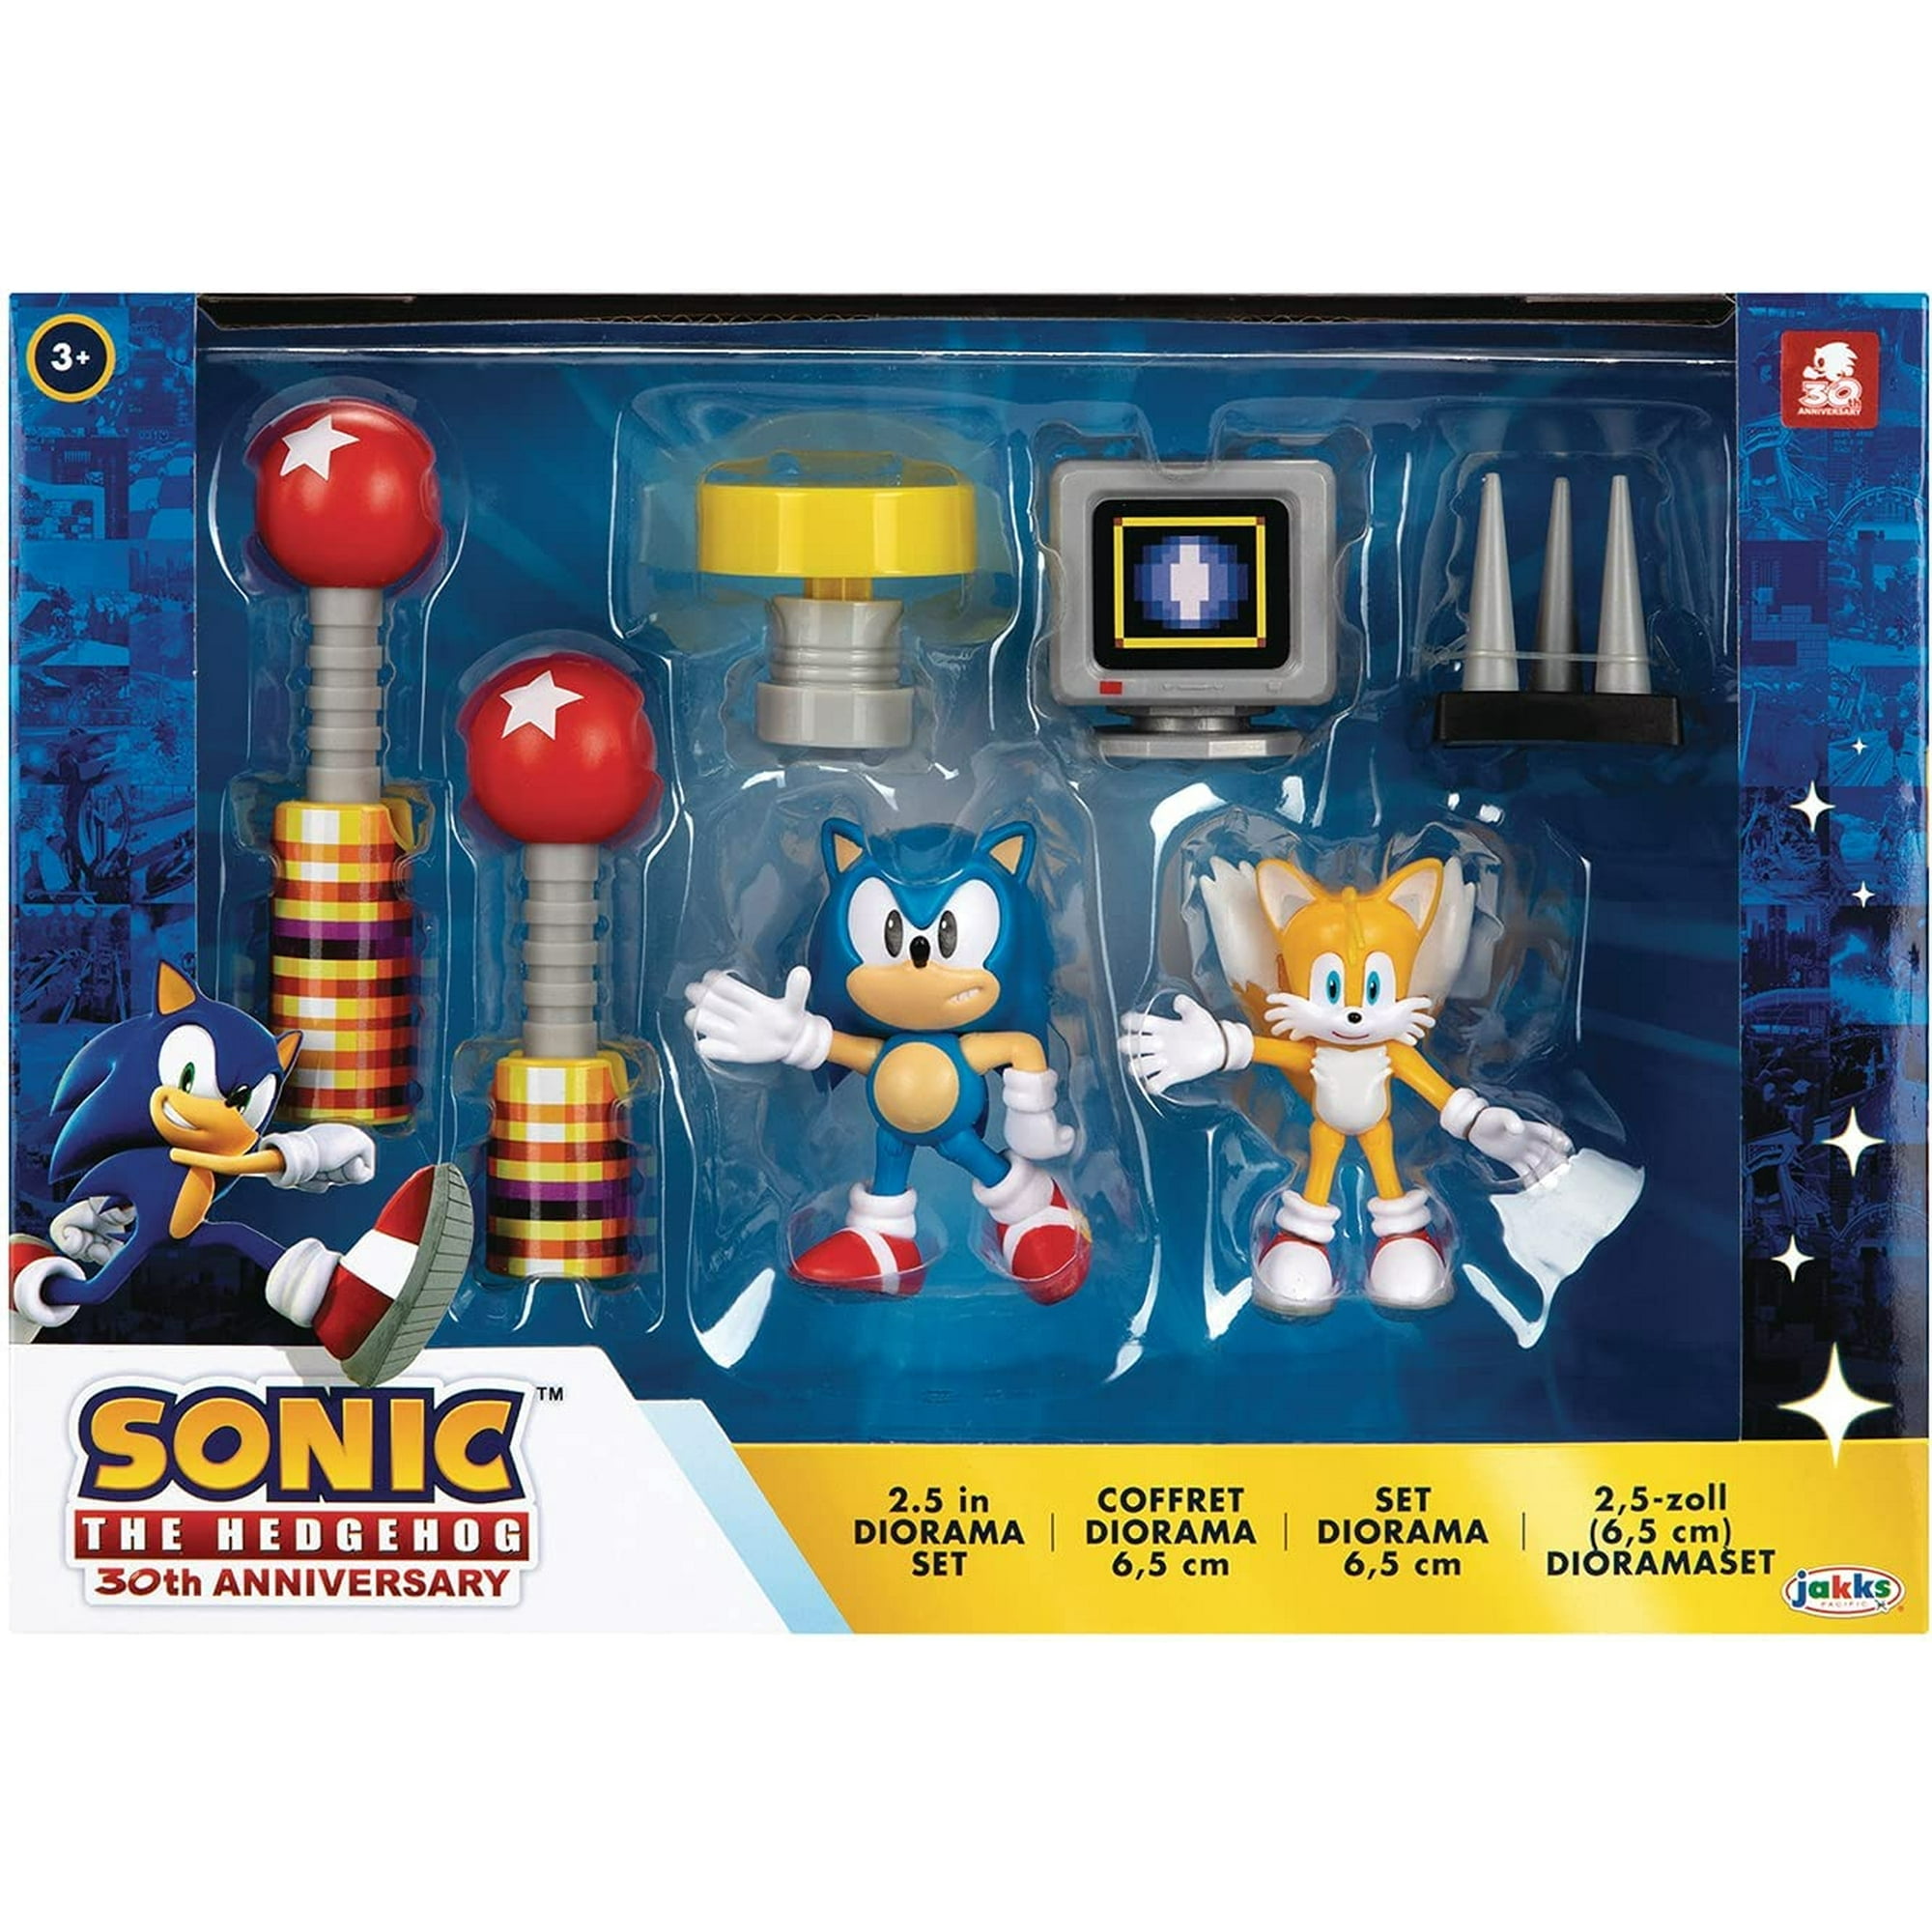  Sonic Prime Figuras de 2.5 Multipack Wave 2 : Juguetes y Juegos